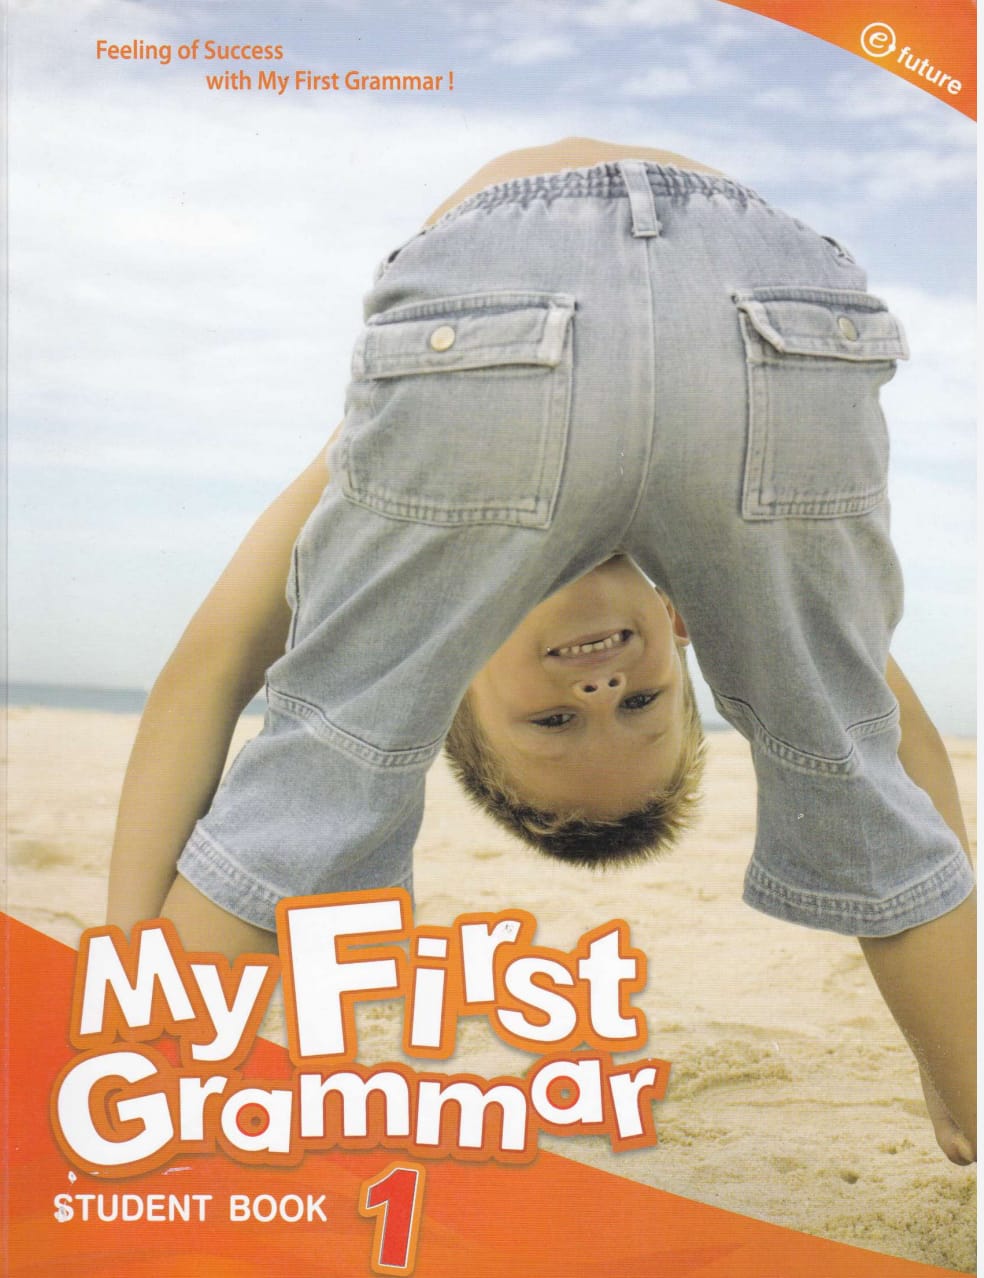 My first Grammar. My first Grammar students book. My first Grammar Workbook 2. Grammar 1. Next grammar